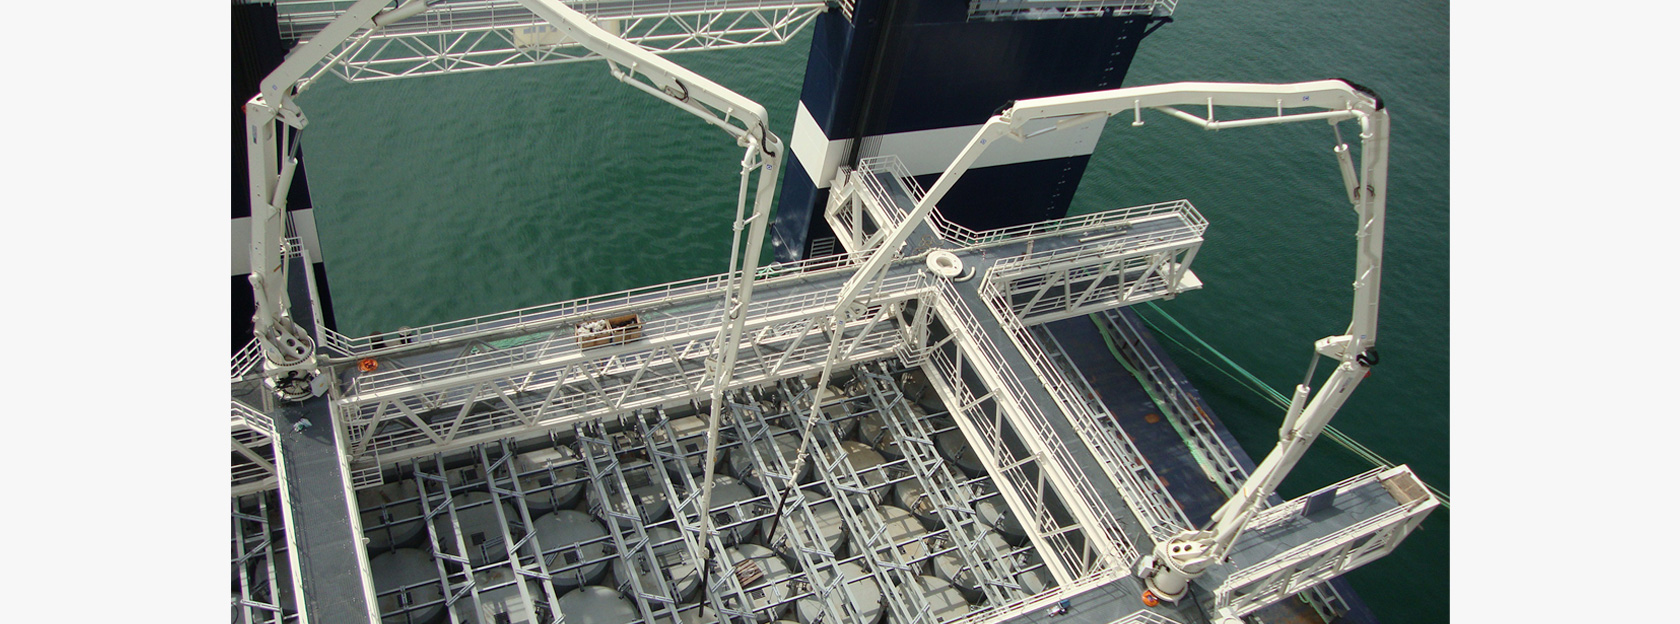 En SEBHSA fabricamos brazos estacionarios y rotativos a medida para distribución de hormigón en la construcción de puertos y rascacielos.